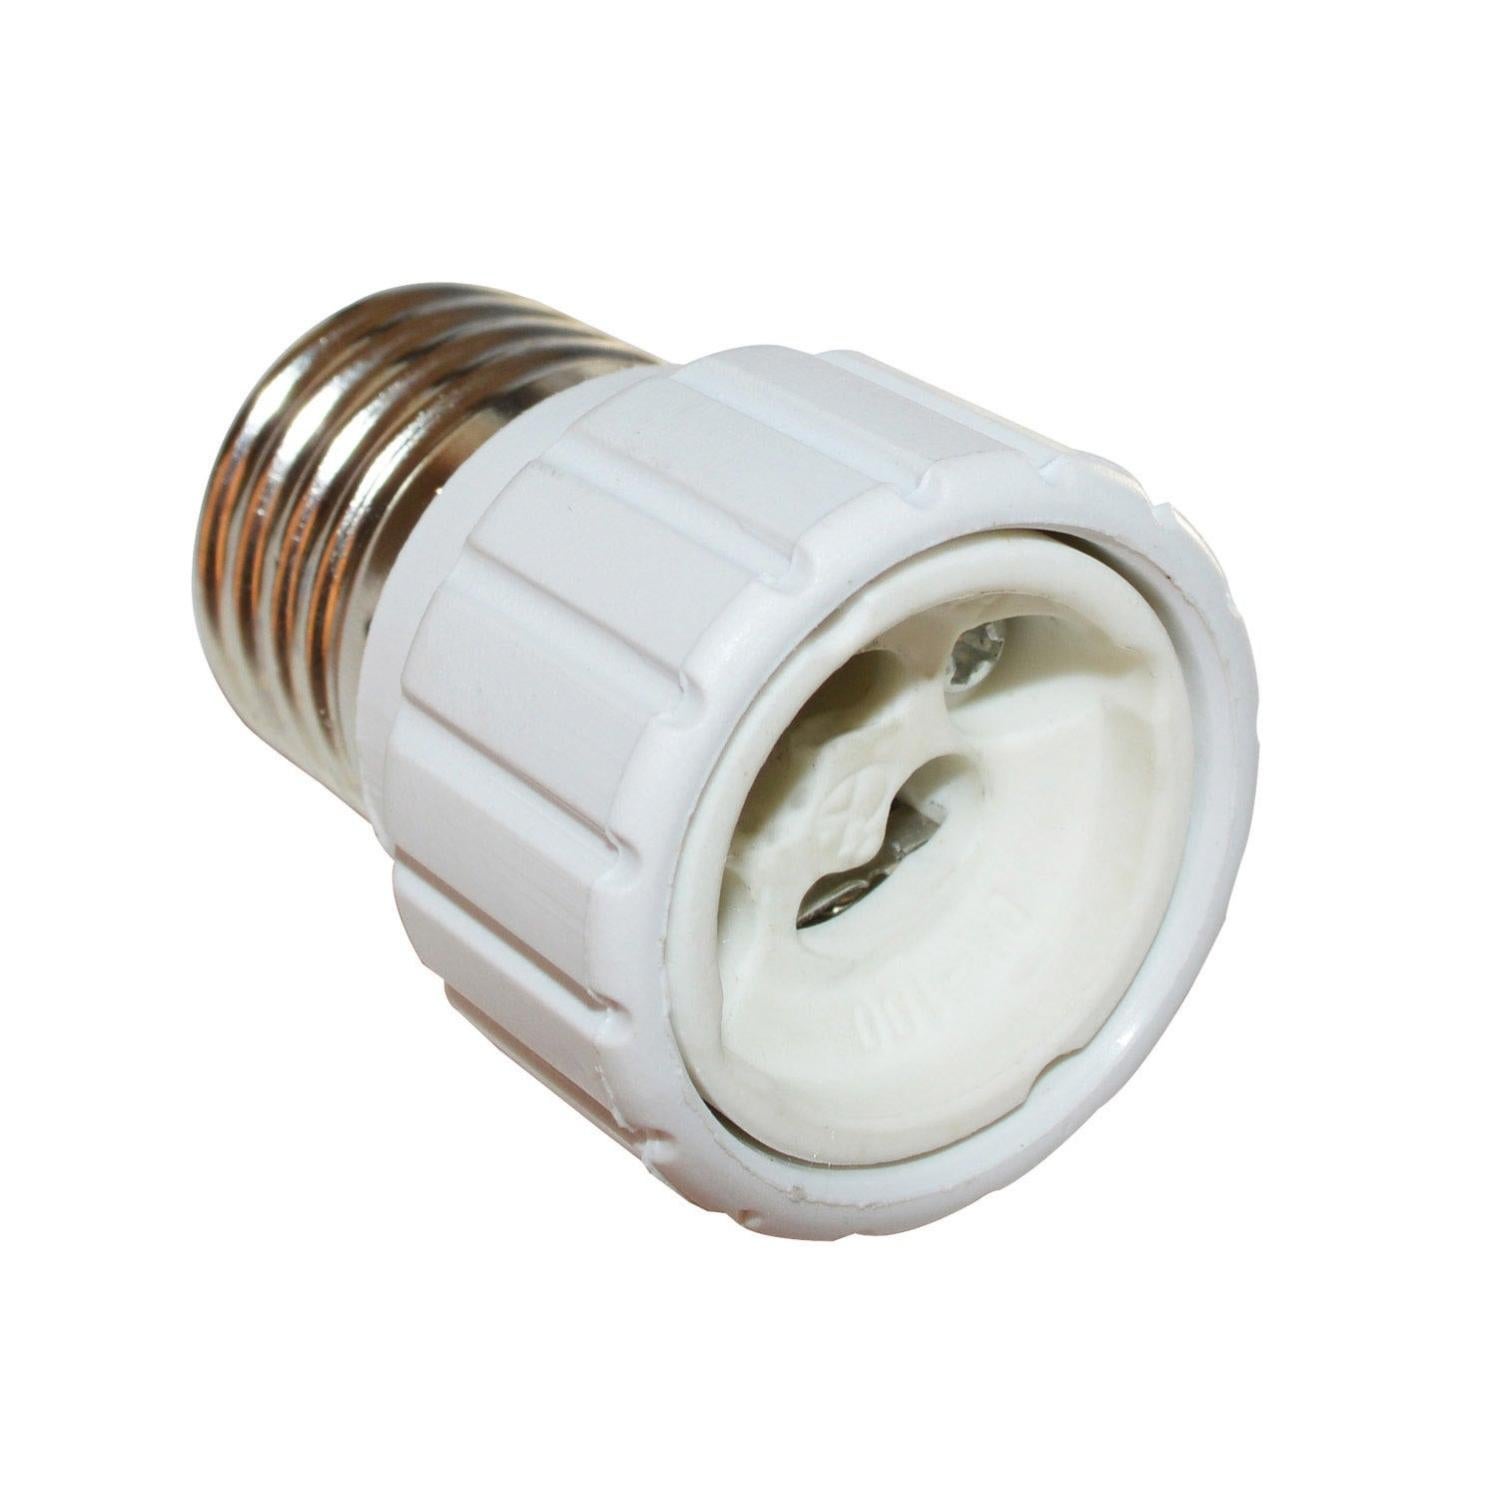 Adaptateur douille pour ampoule E27 à une base GU10 - Provence Outillage